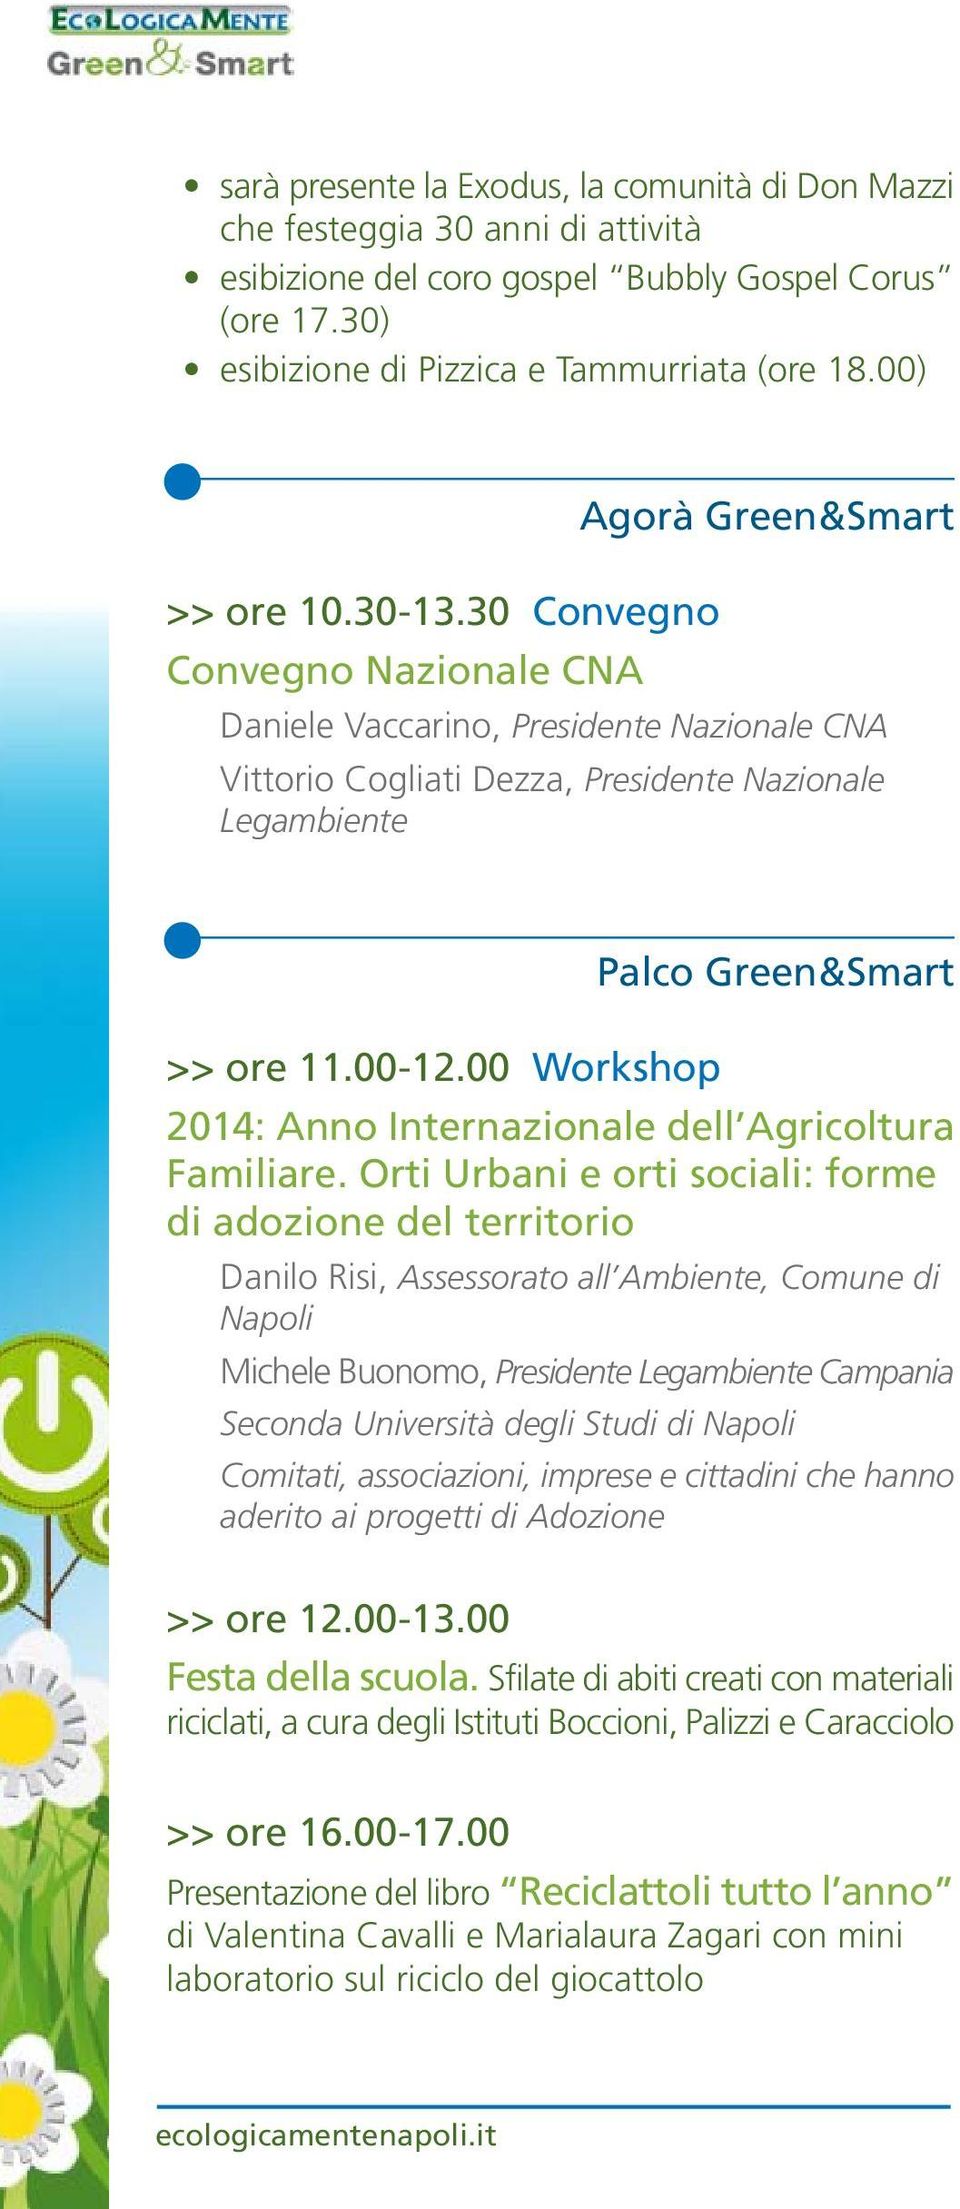 00 Workshop Palco Green&Smart 2014: Anno Internazionale dell Agricoltura Familiare.